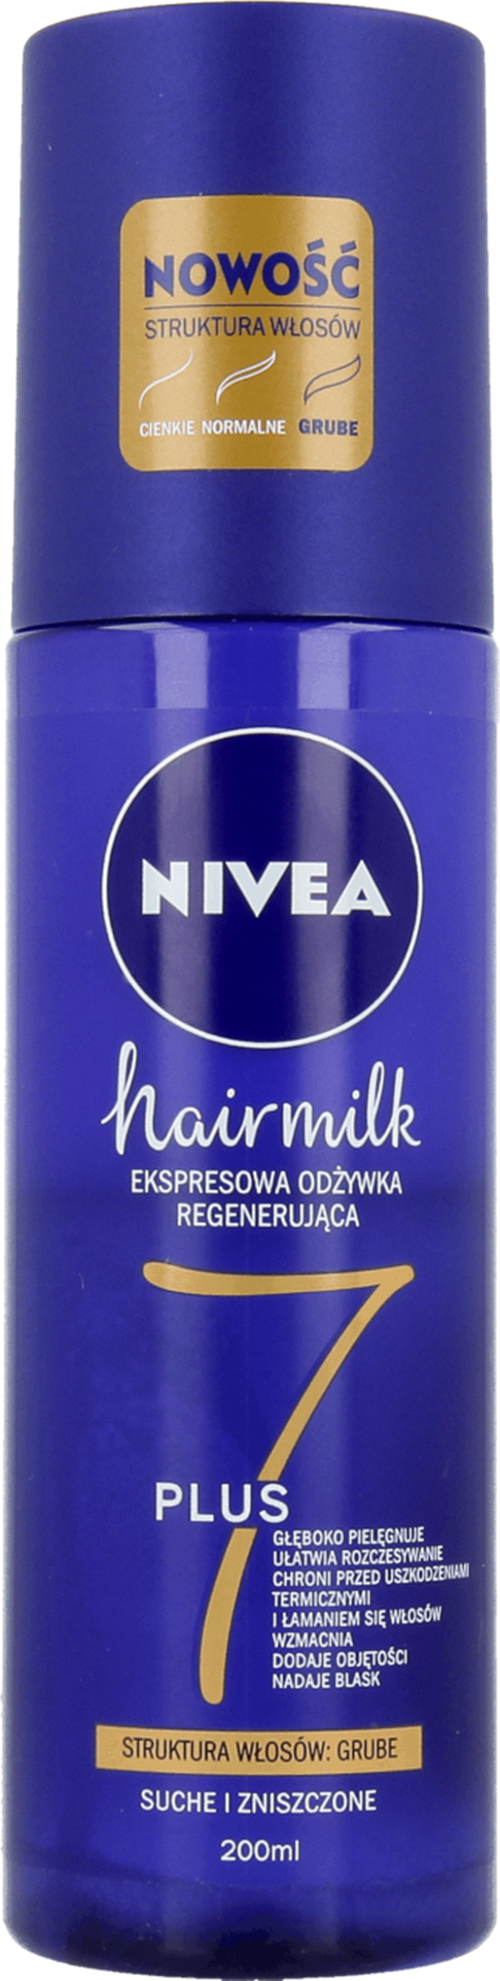 nivea hair milk ekspresowa odżywka do włosów